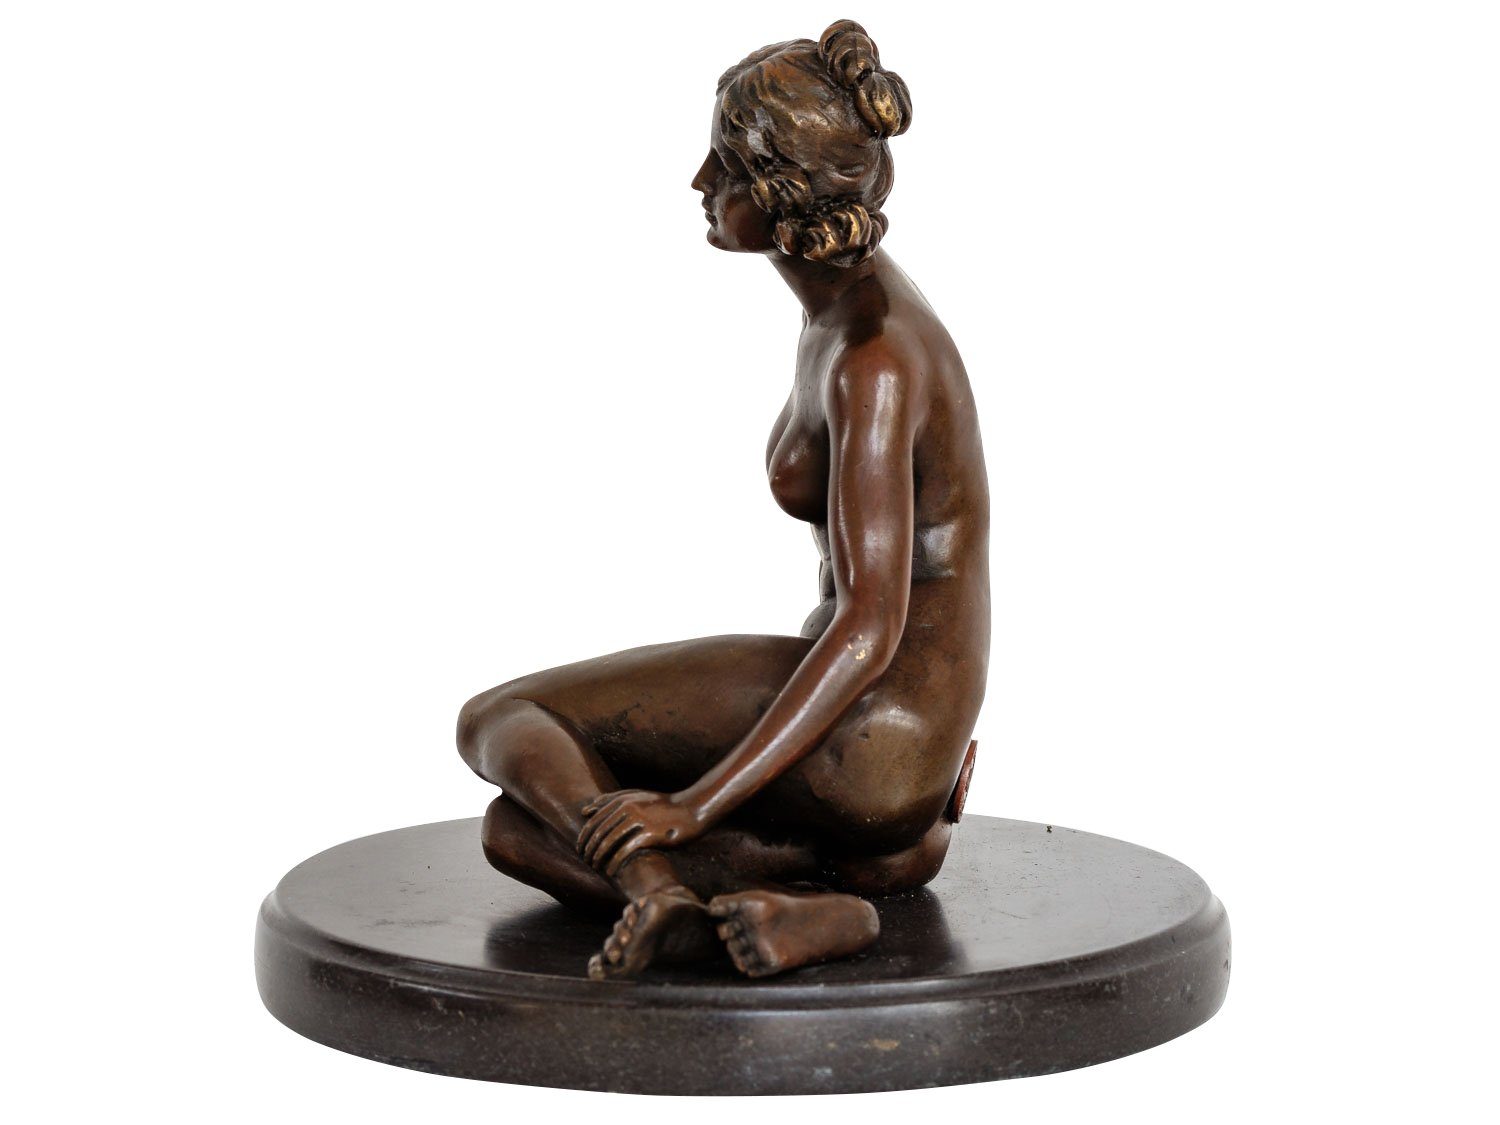 Aubaho Skulptur Bronzefigur erotische Kunst Bronzeskulptur Anti Frau Bronze Erotik Akt